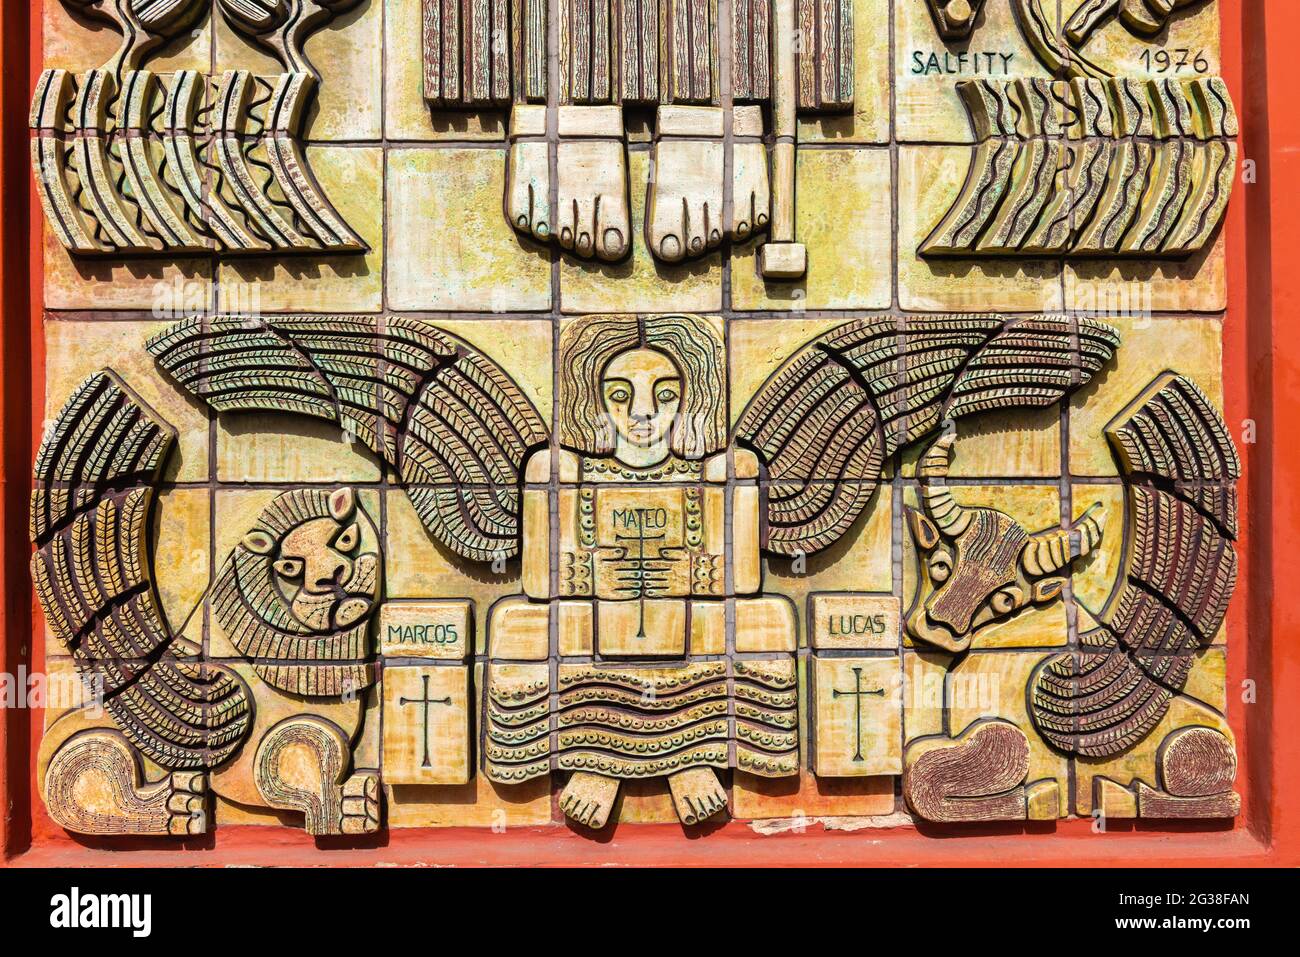 Das neoklassische Museum für Hochgebirgsarchäologie beherbergt Artefakte aus der Inka-Zivilisation, Salta, Provinz Salta, NW-Argentinien, Lateinamerika Stockfoto